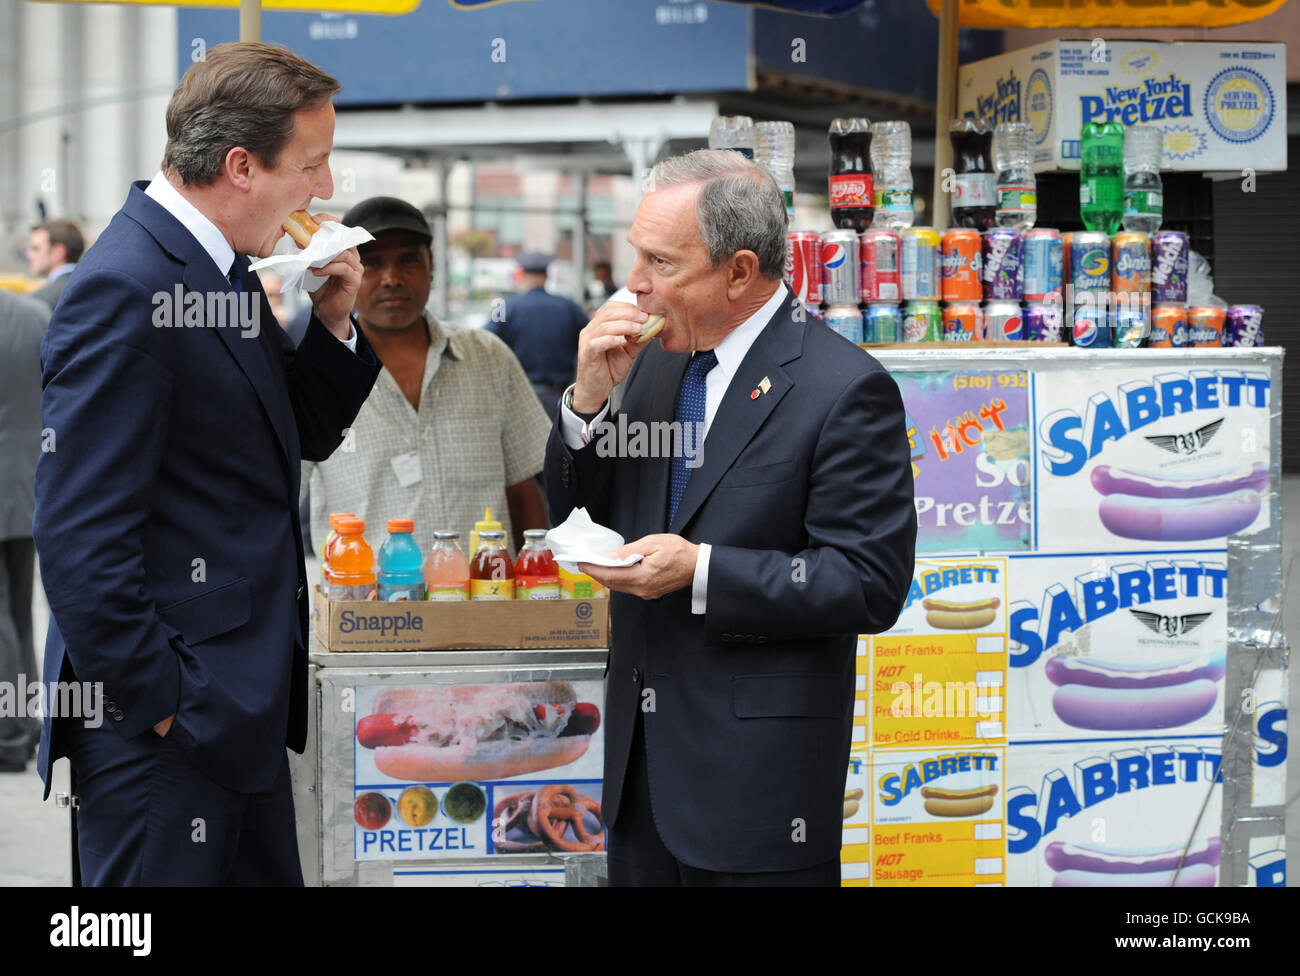 Premierminister David Cameron genießt einen Hotdog mit dem New Yorker Bürgermeister Michael Bloomberg, als er heute im Rahmen seines zweitägigen Besuchs in den USA von Washington DC in der Penn Station ankam. Stockfoto